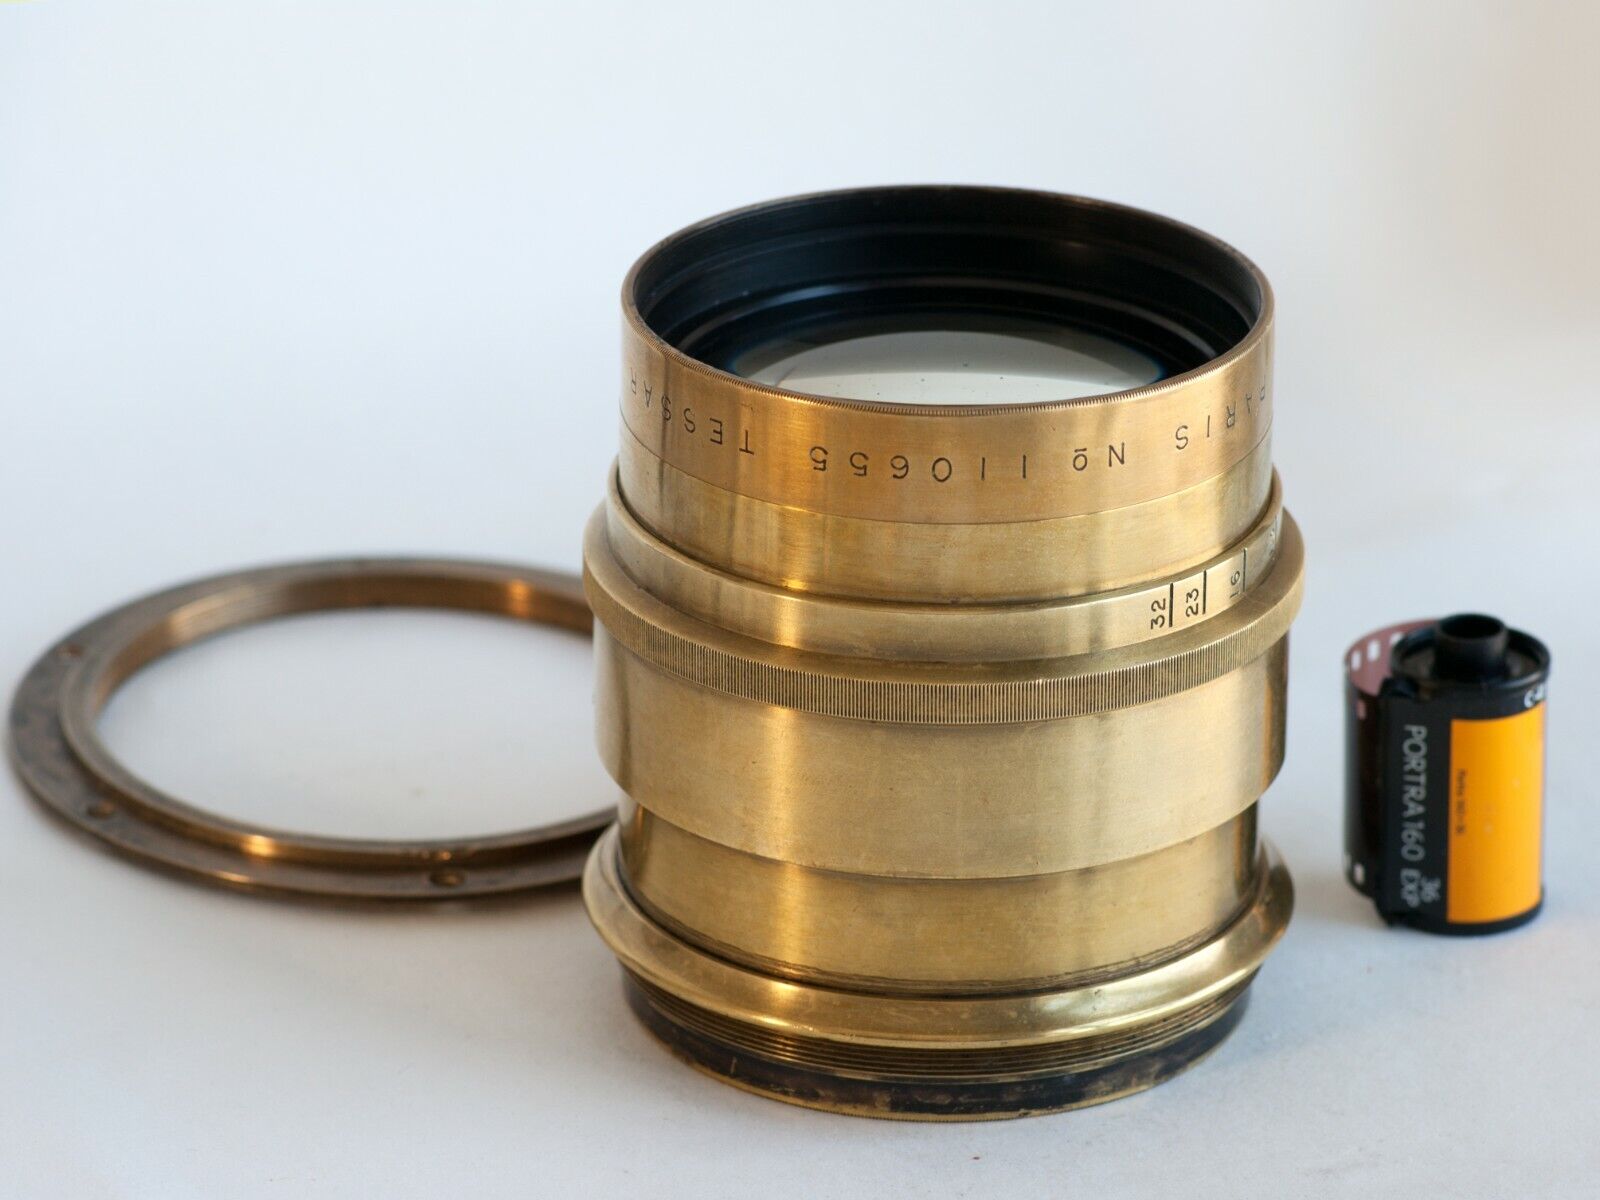 E Krauss Paris Tessar 500 mm f/6.3 Vintage Large Format Lens